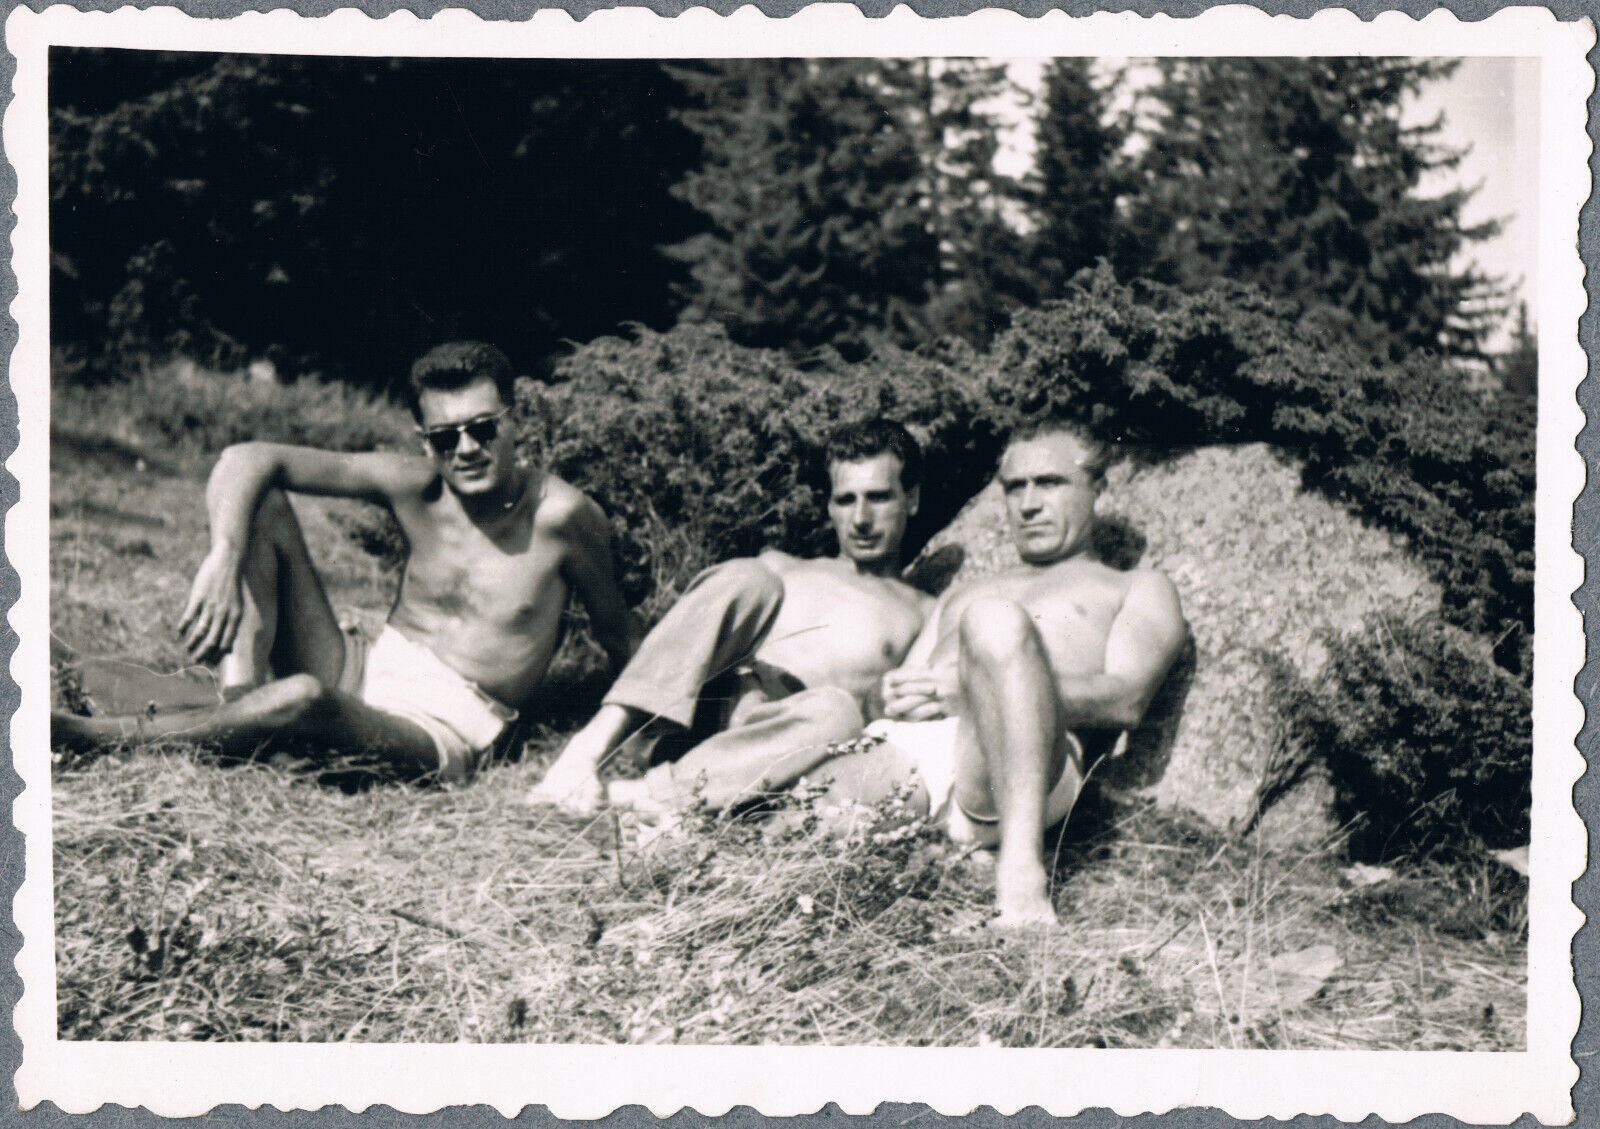 1960s Beefcake Bulge Shirtless Men Trunks Gay Interest Vintage Snapshot Photo